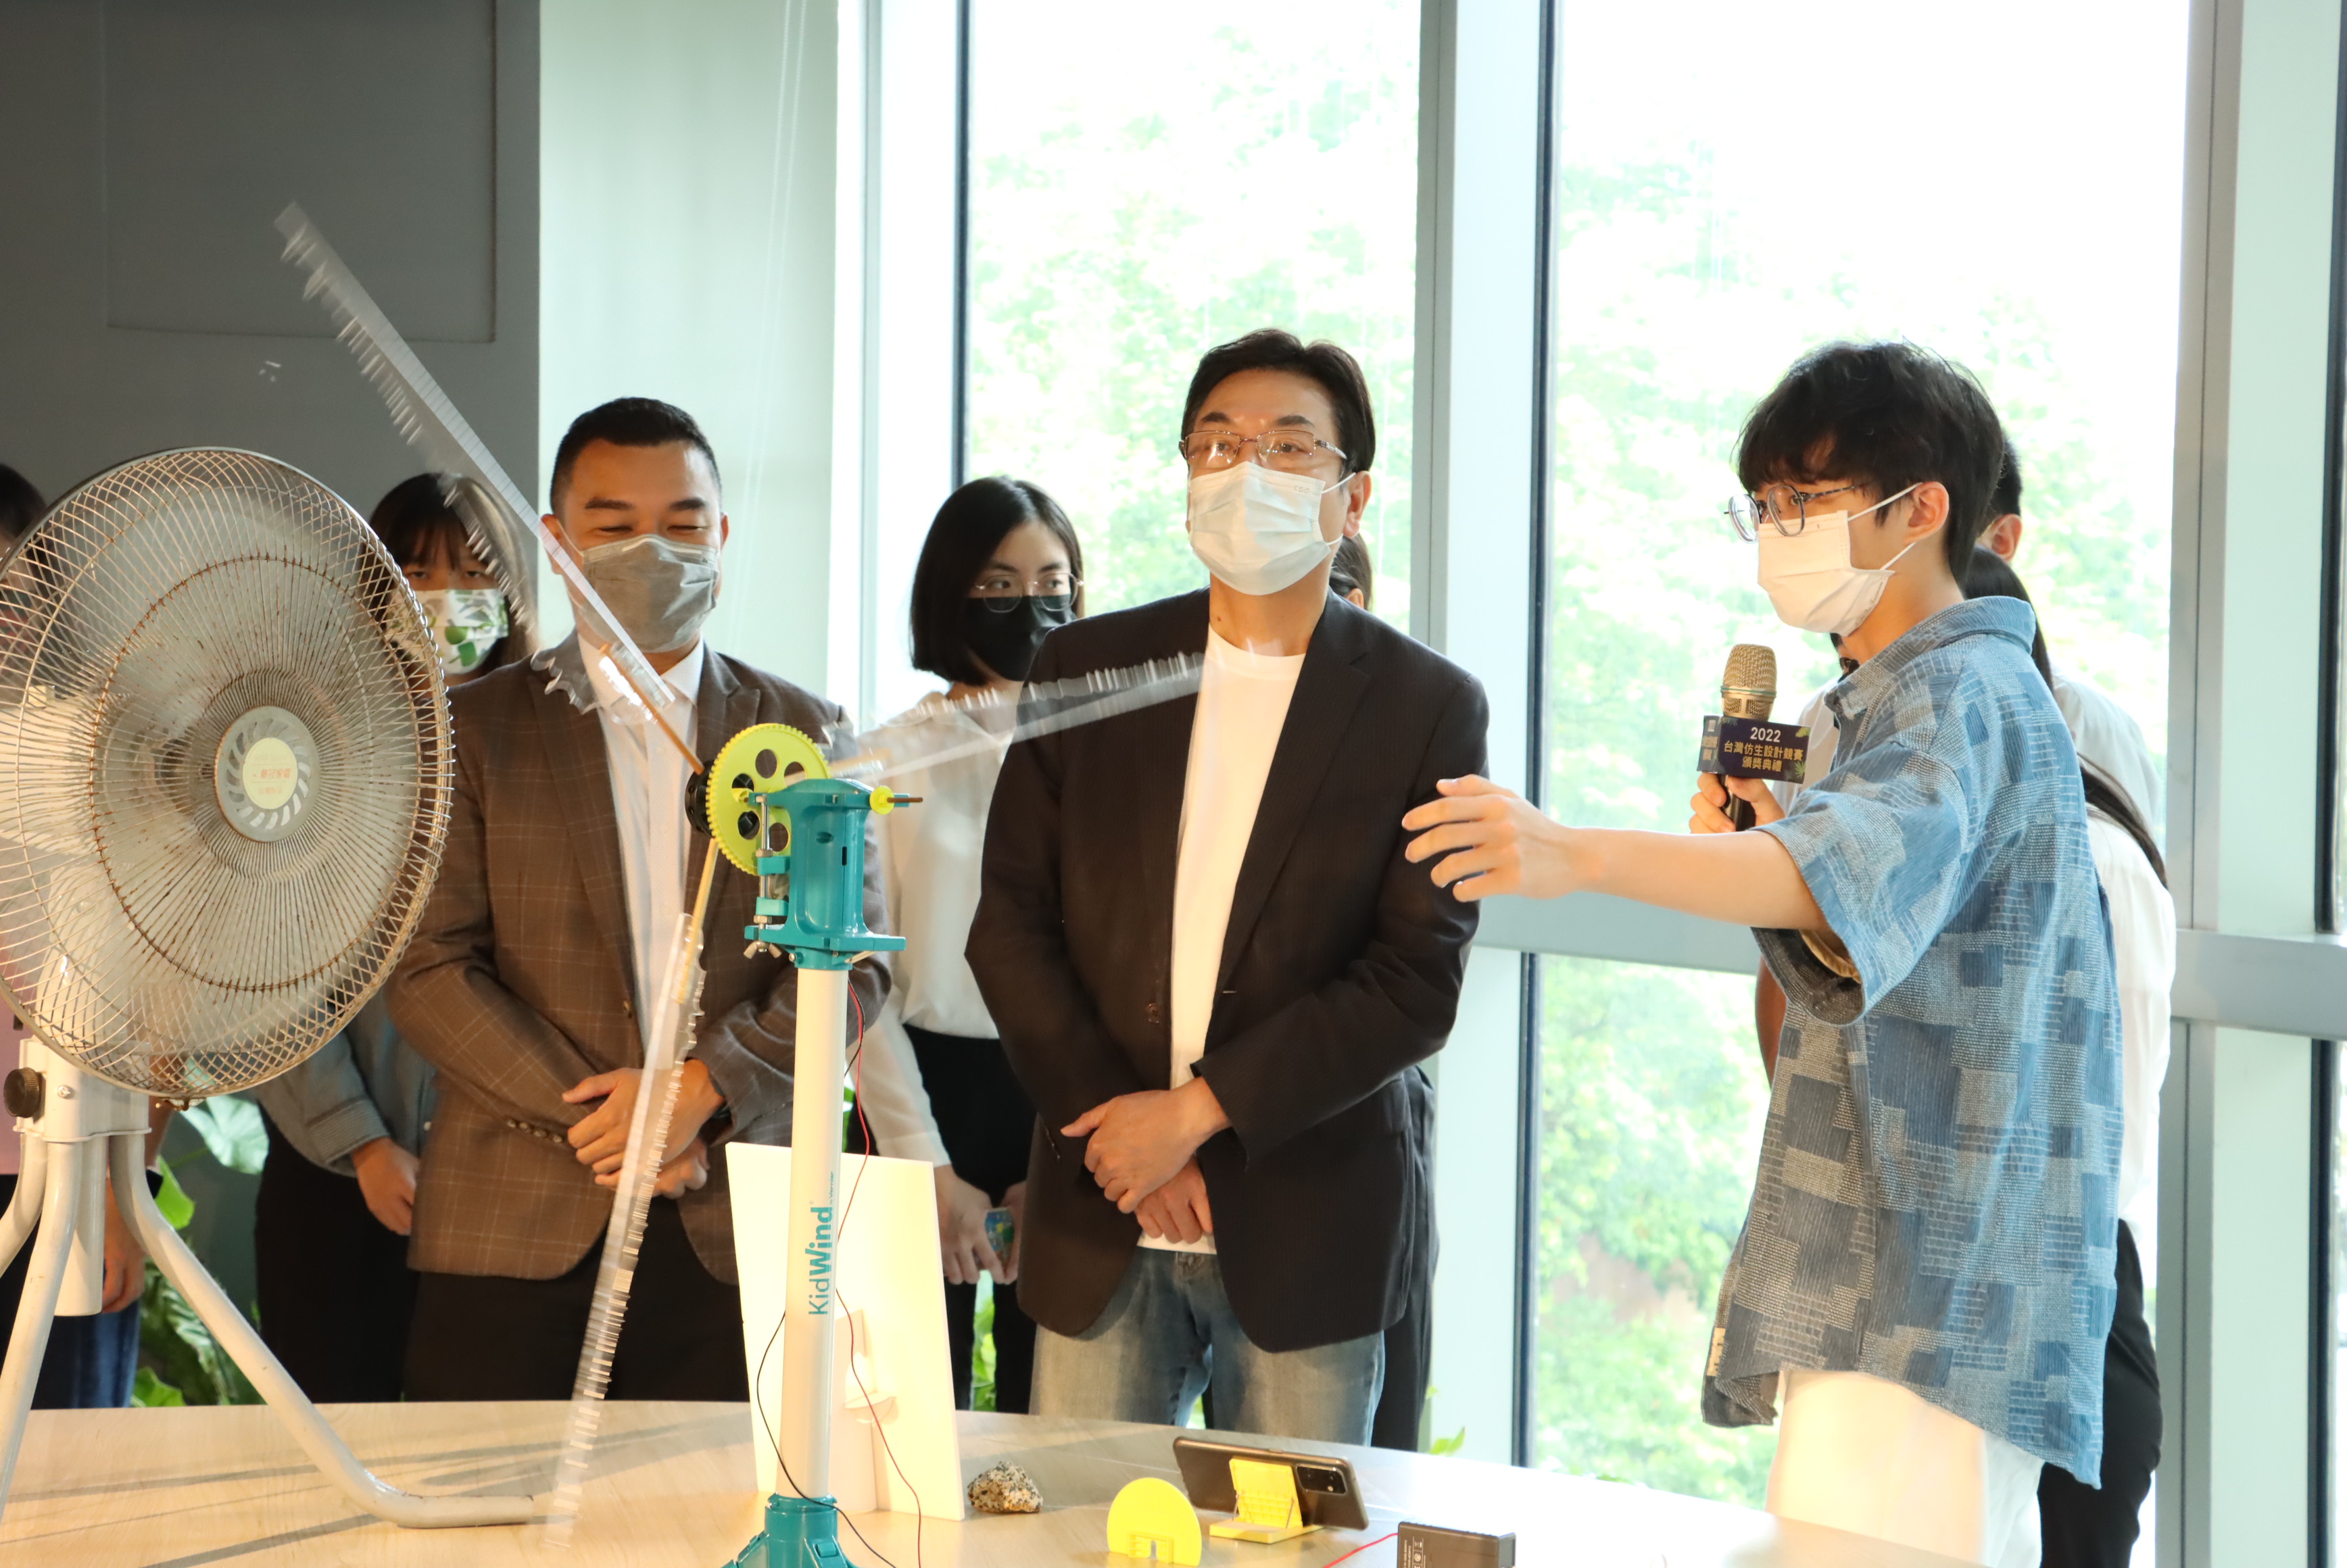 劉和然副市長聆聽臺灣科技大學建築系作品「Wind Digester」希望可轉移和降低高層建